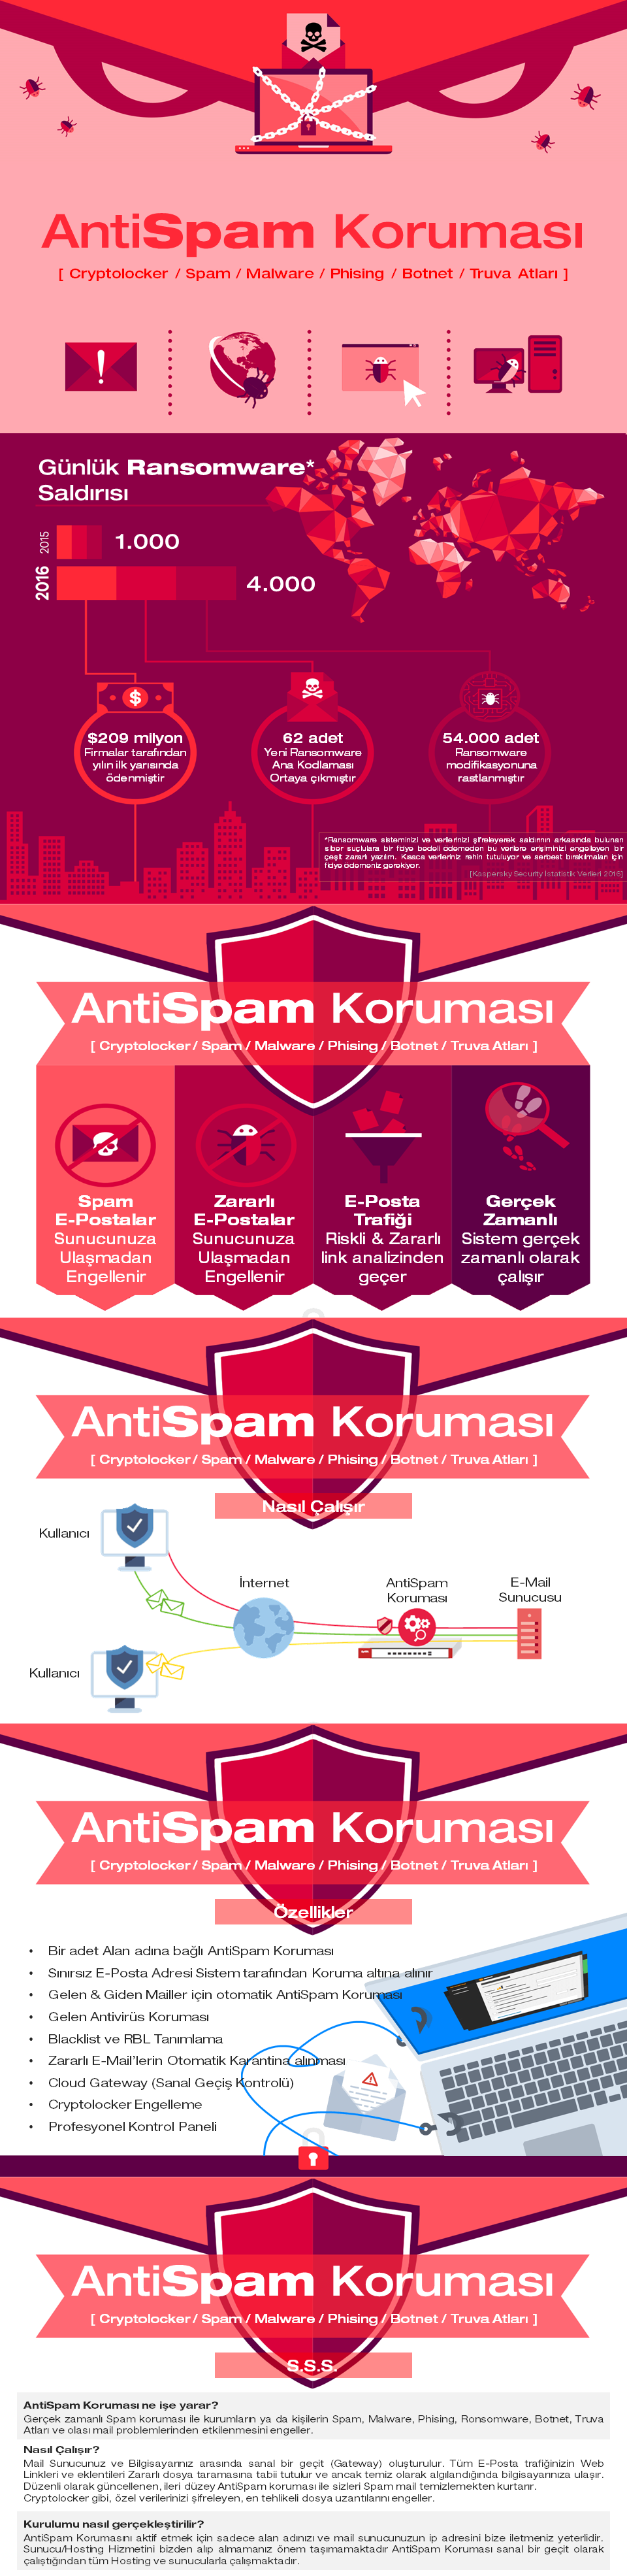 AntiSpam Koruması